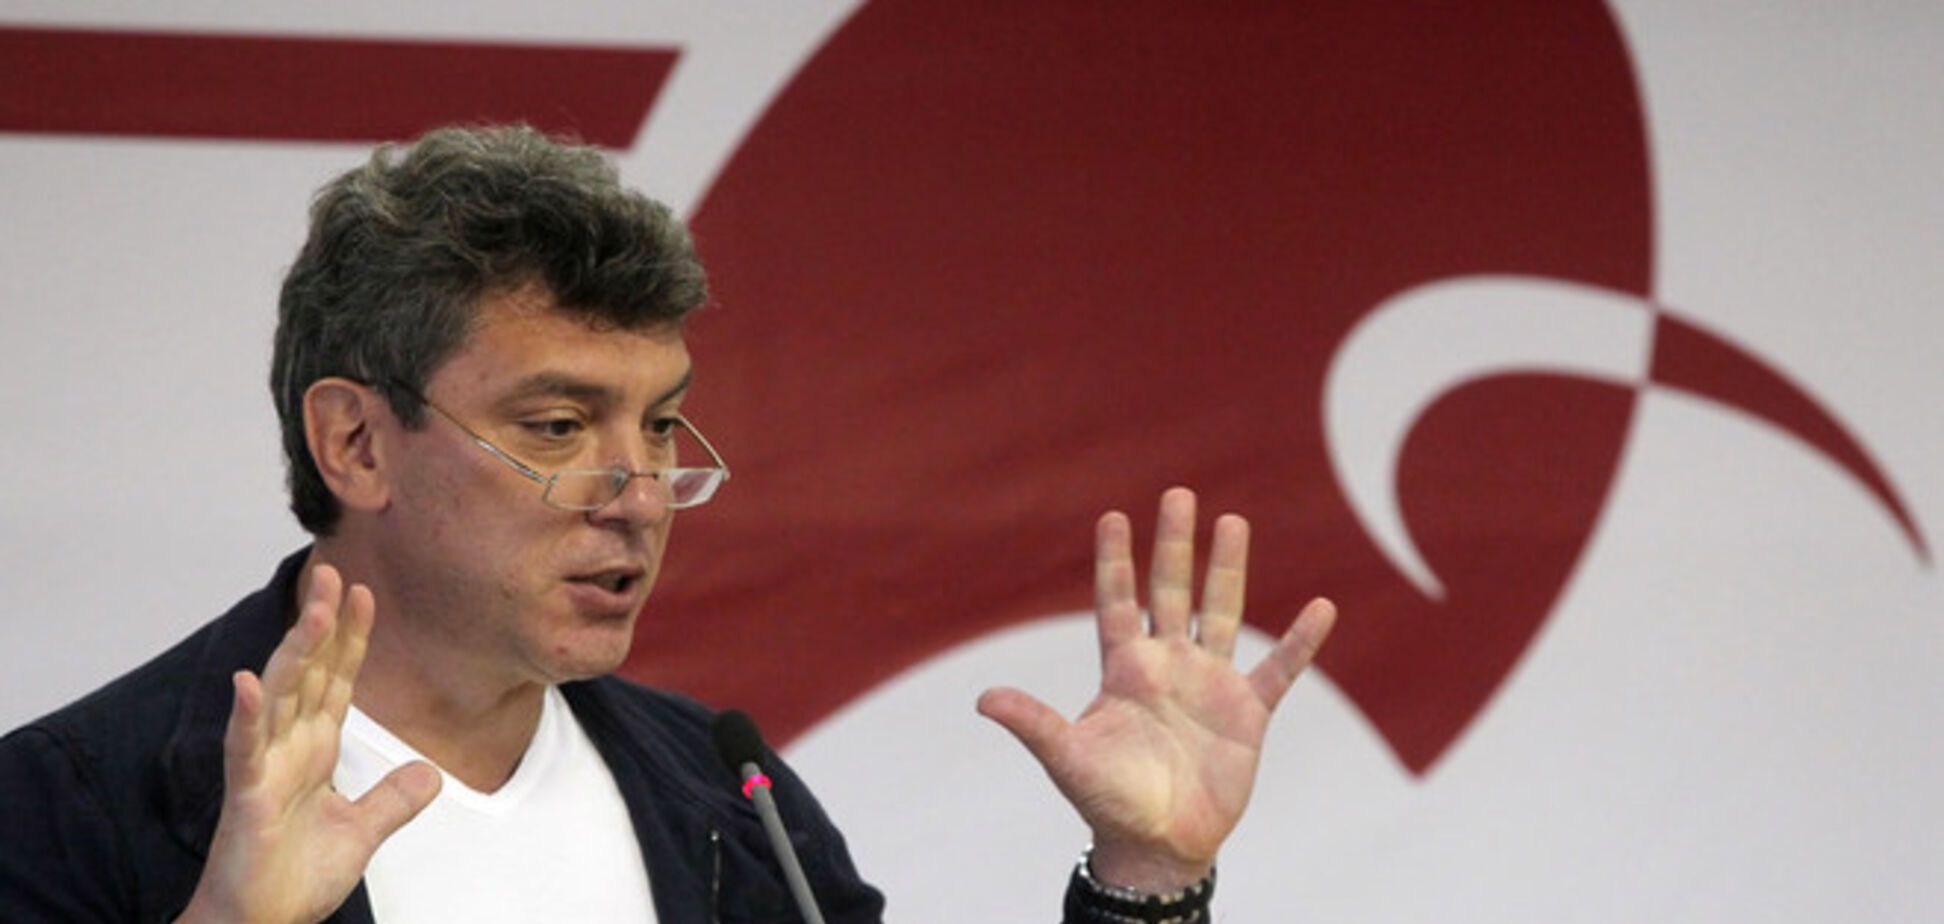 Путин сделал Крым бандитским анклавом, разрешив 'Гоблину' заниматься бизнесом - Немцов